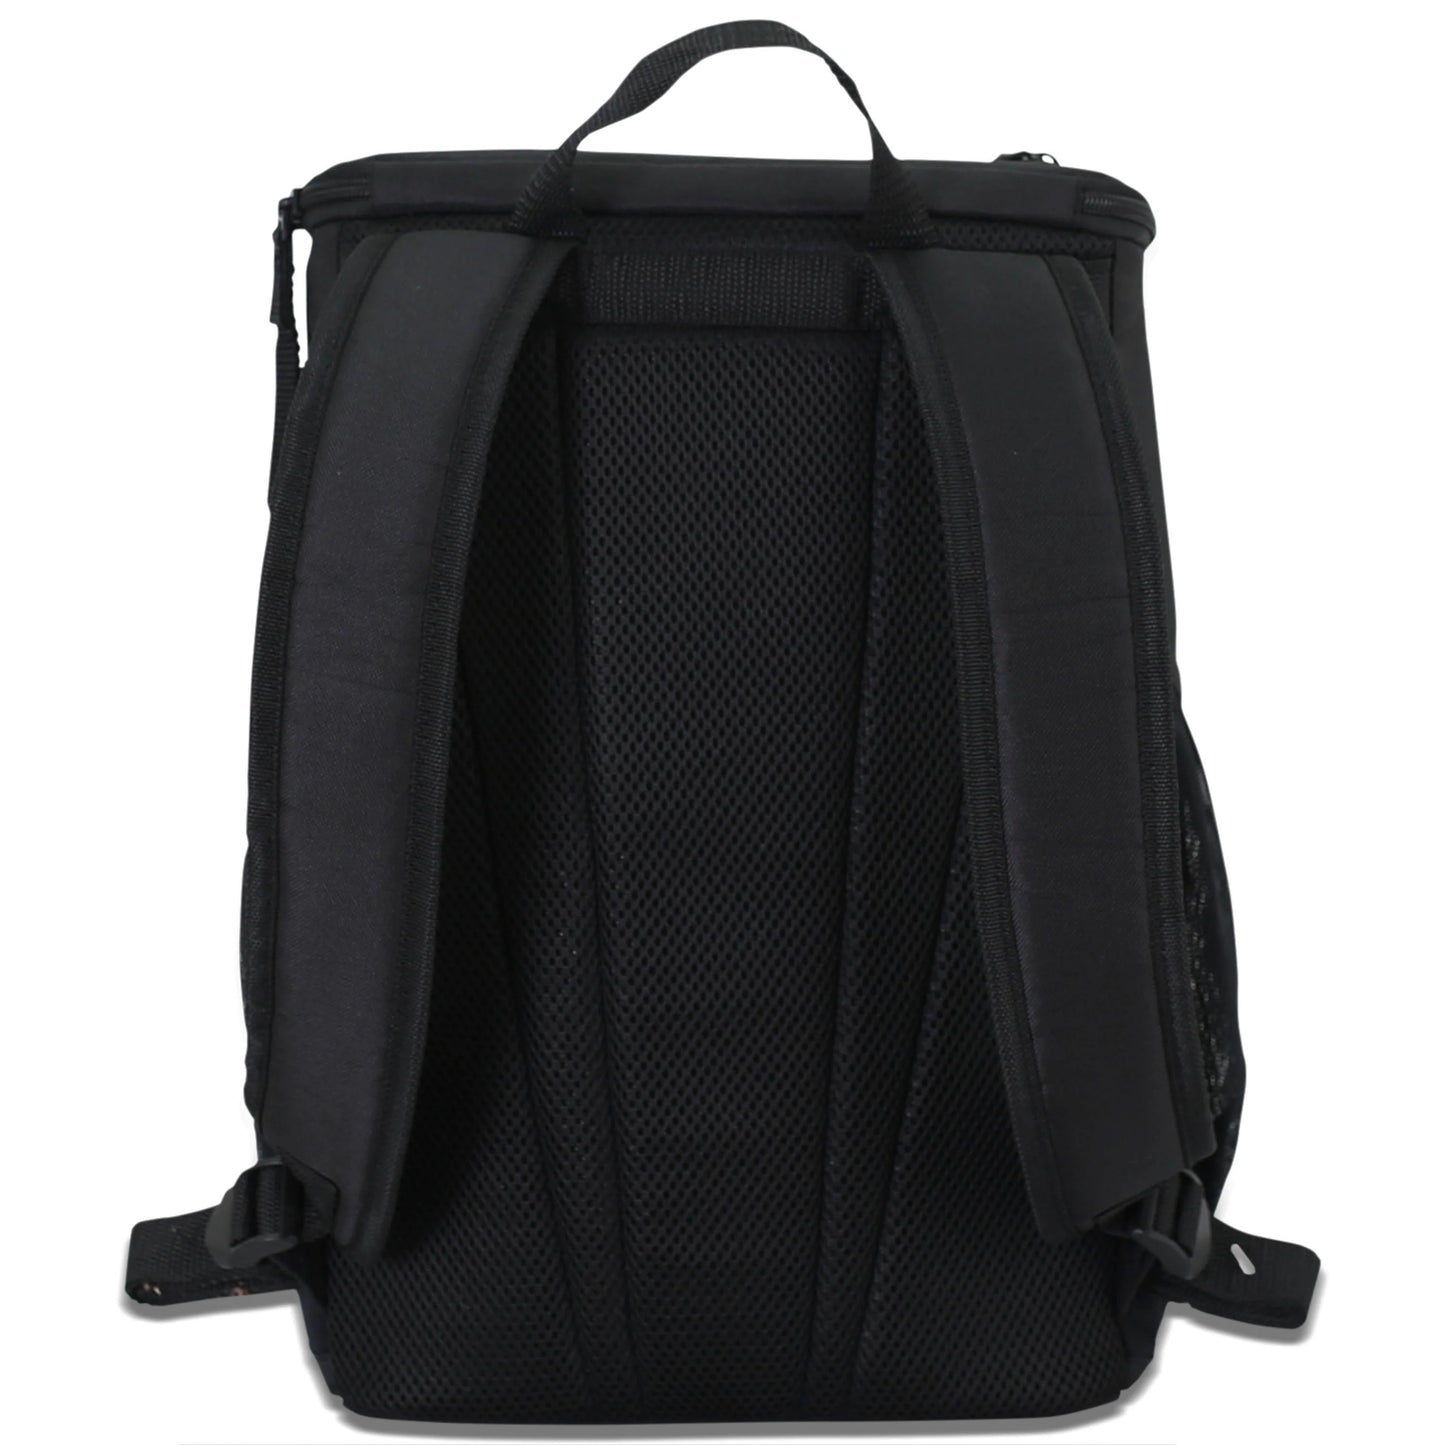 16" Cooler Backpack